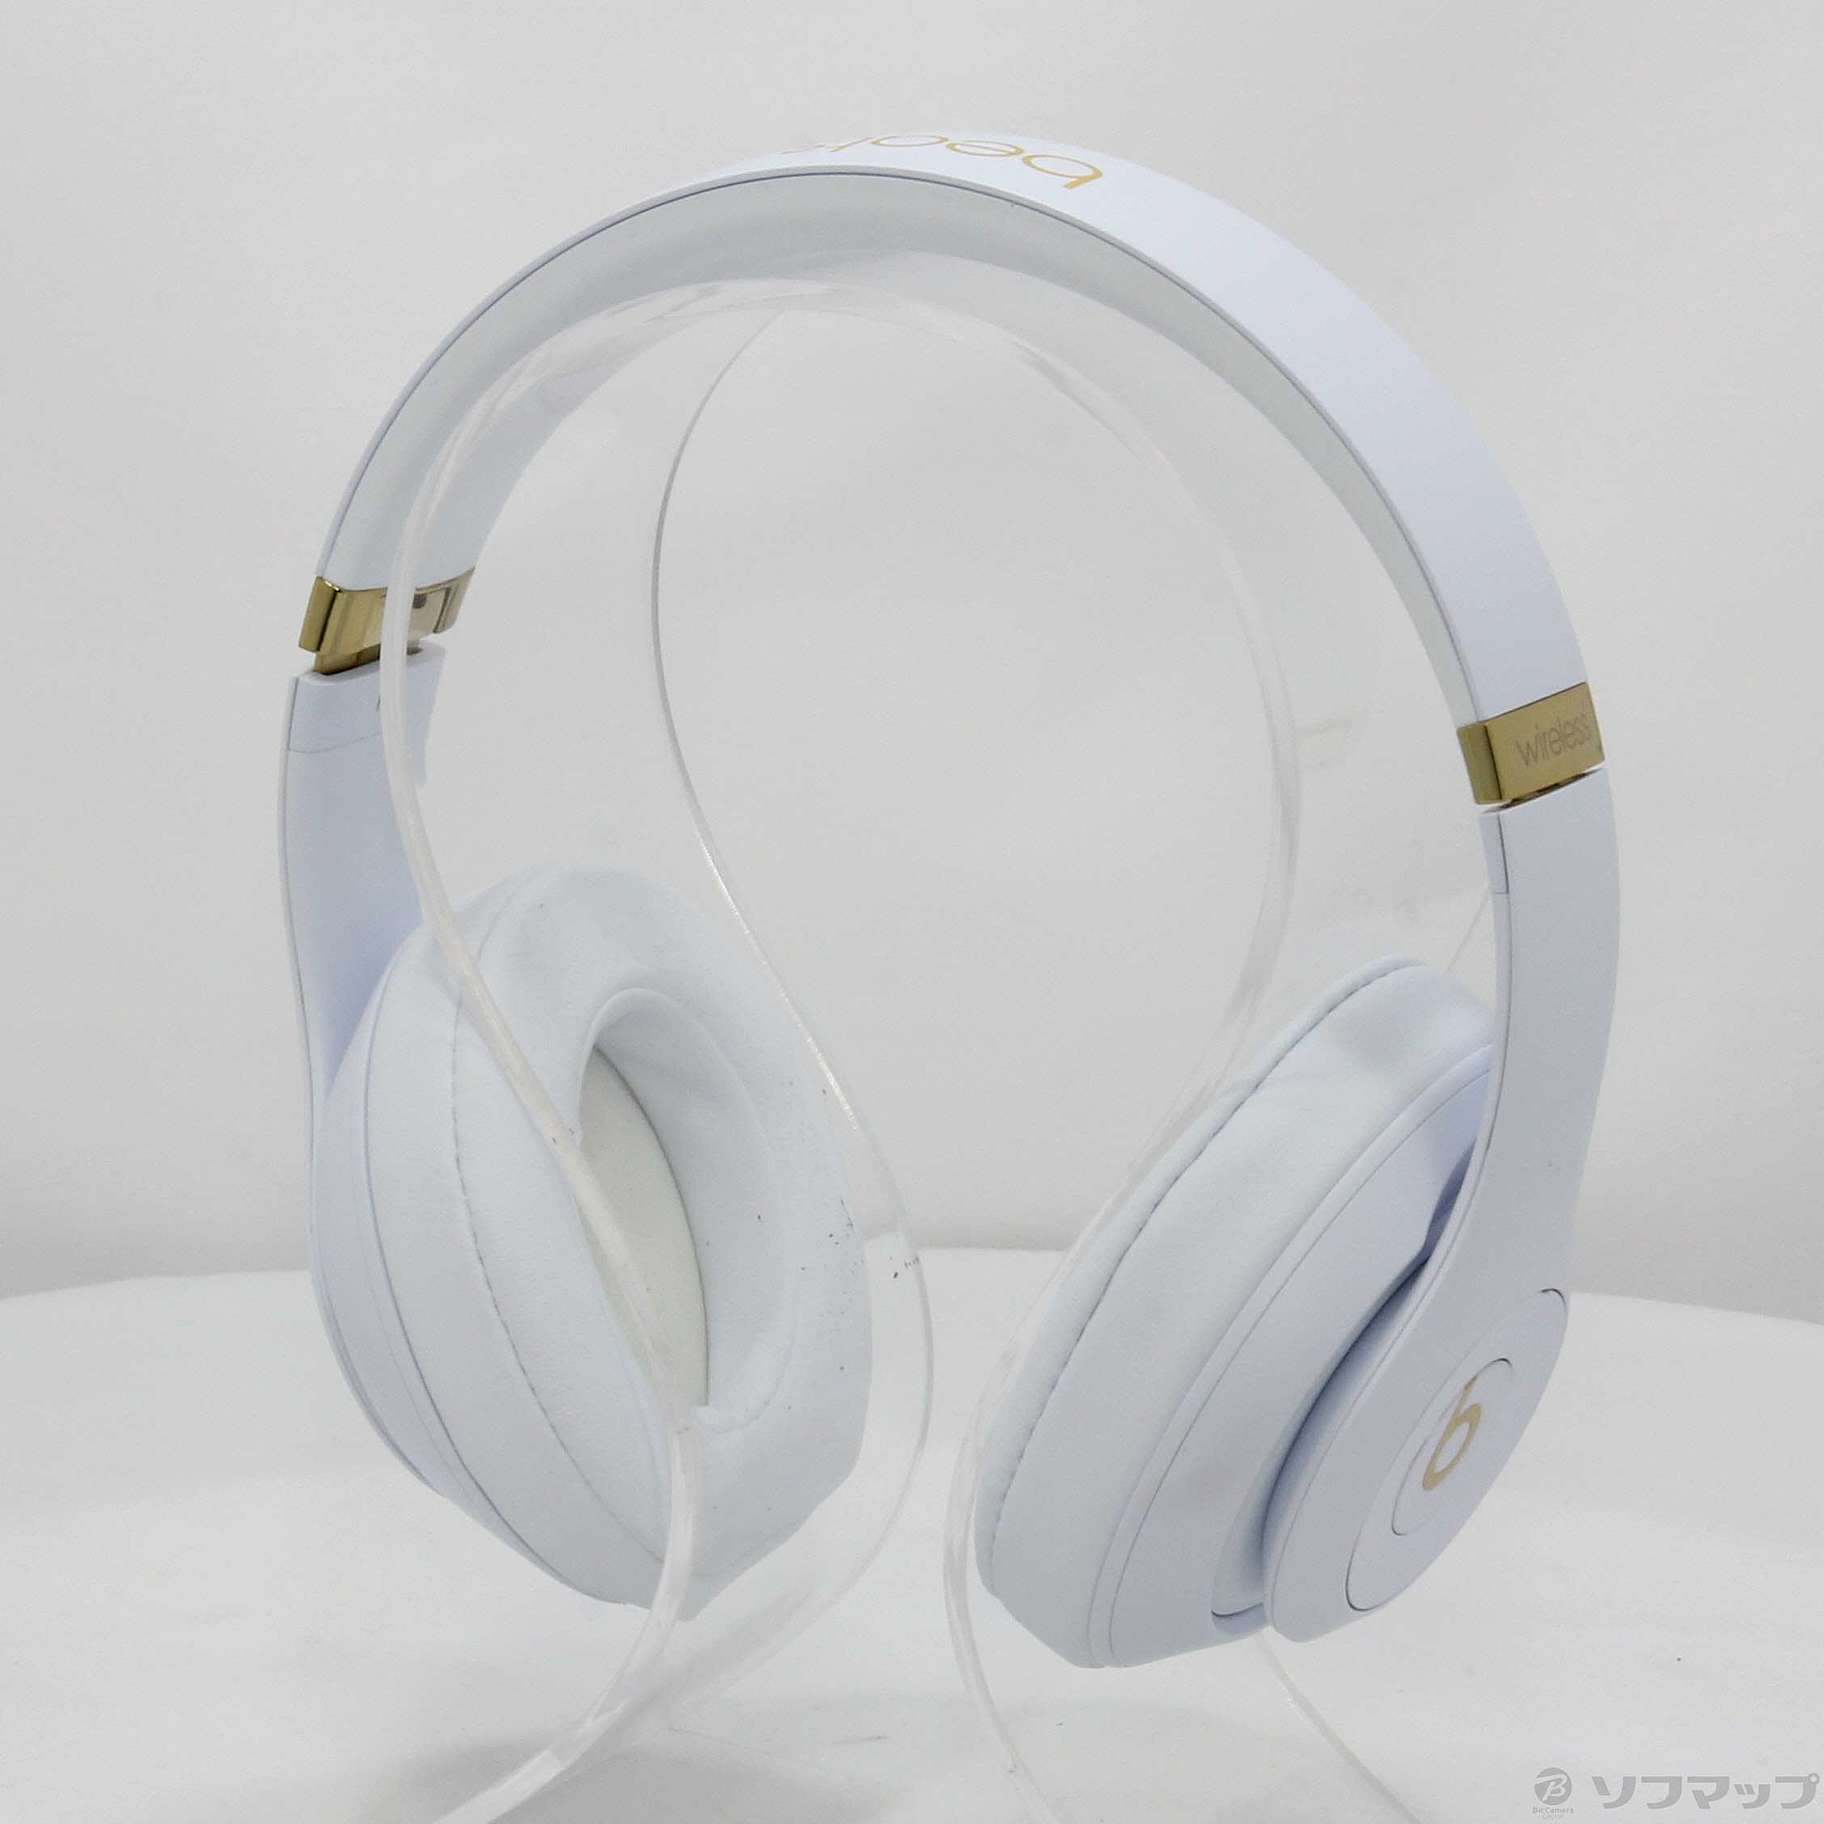 Beats Studio3 Wireless MQ572PA／A ホワイト